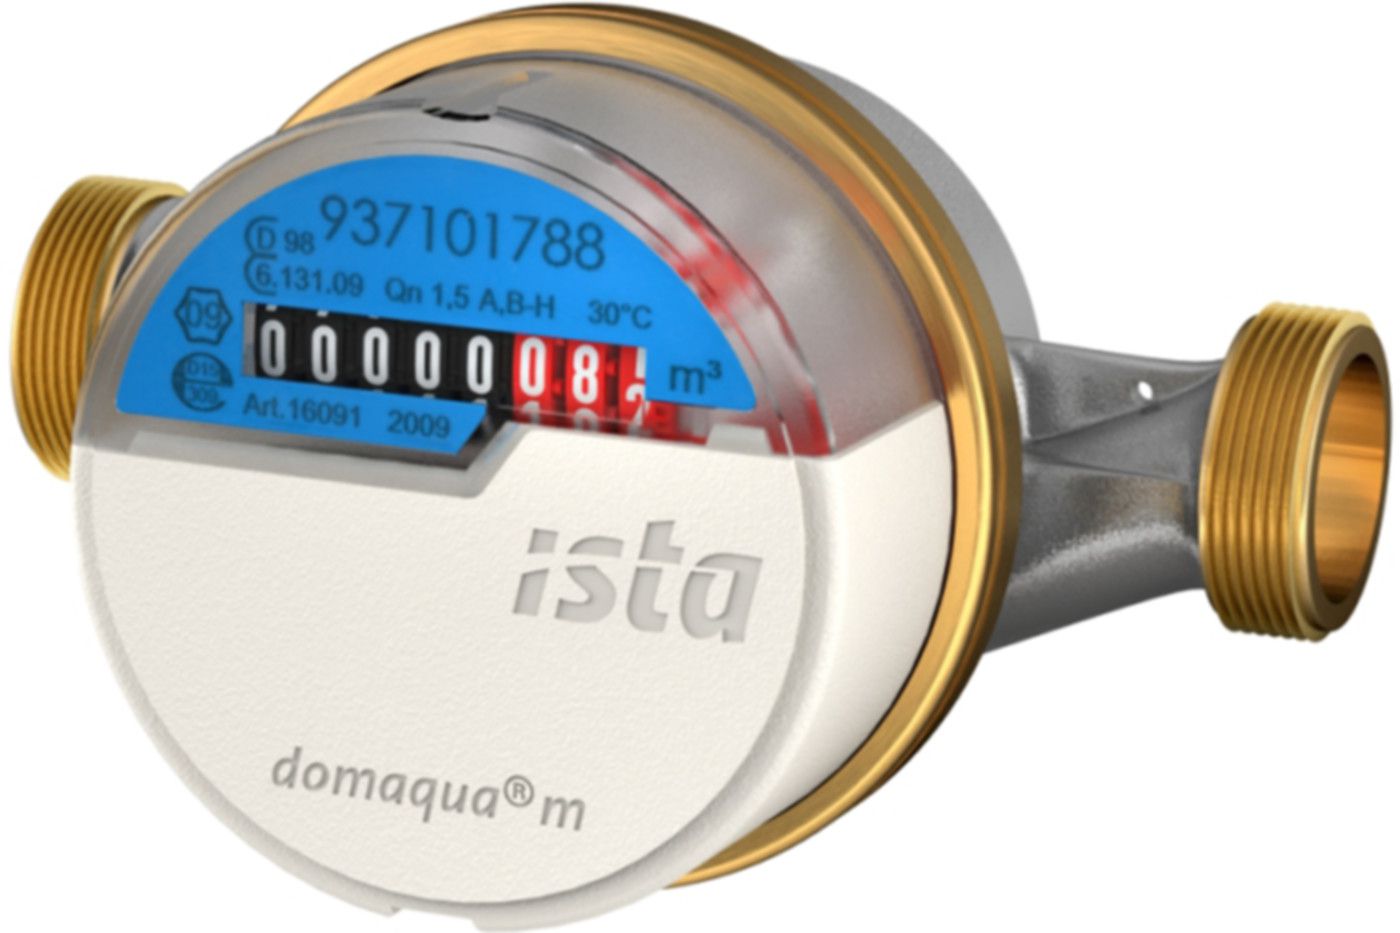 Aufputzzähler Domaqua m DN 15 1/2" G 3/4" - 130 mm warm 2.5 m3/h  16096 - ISTA - Wärme- / Wasserzähler